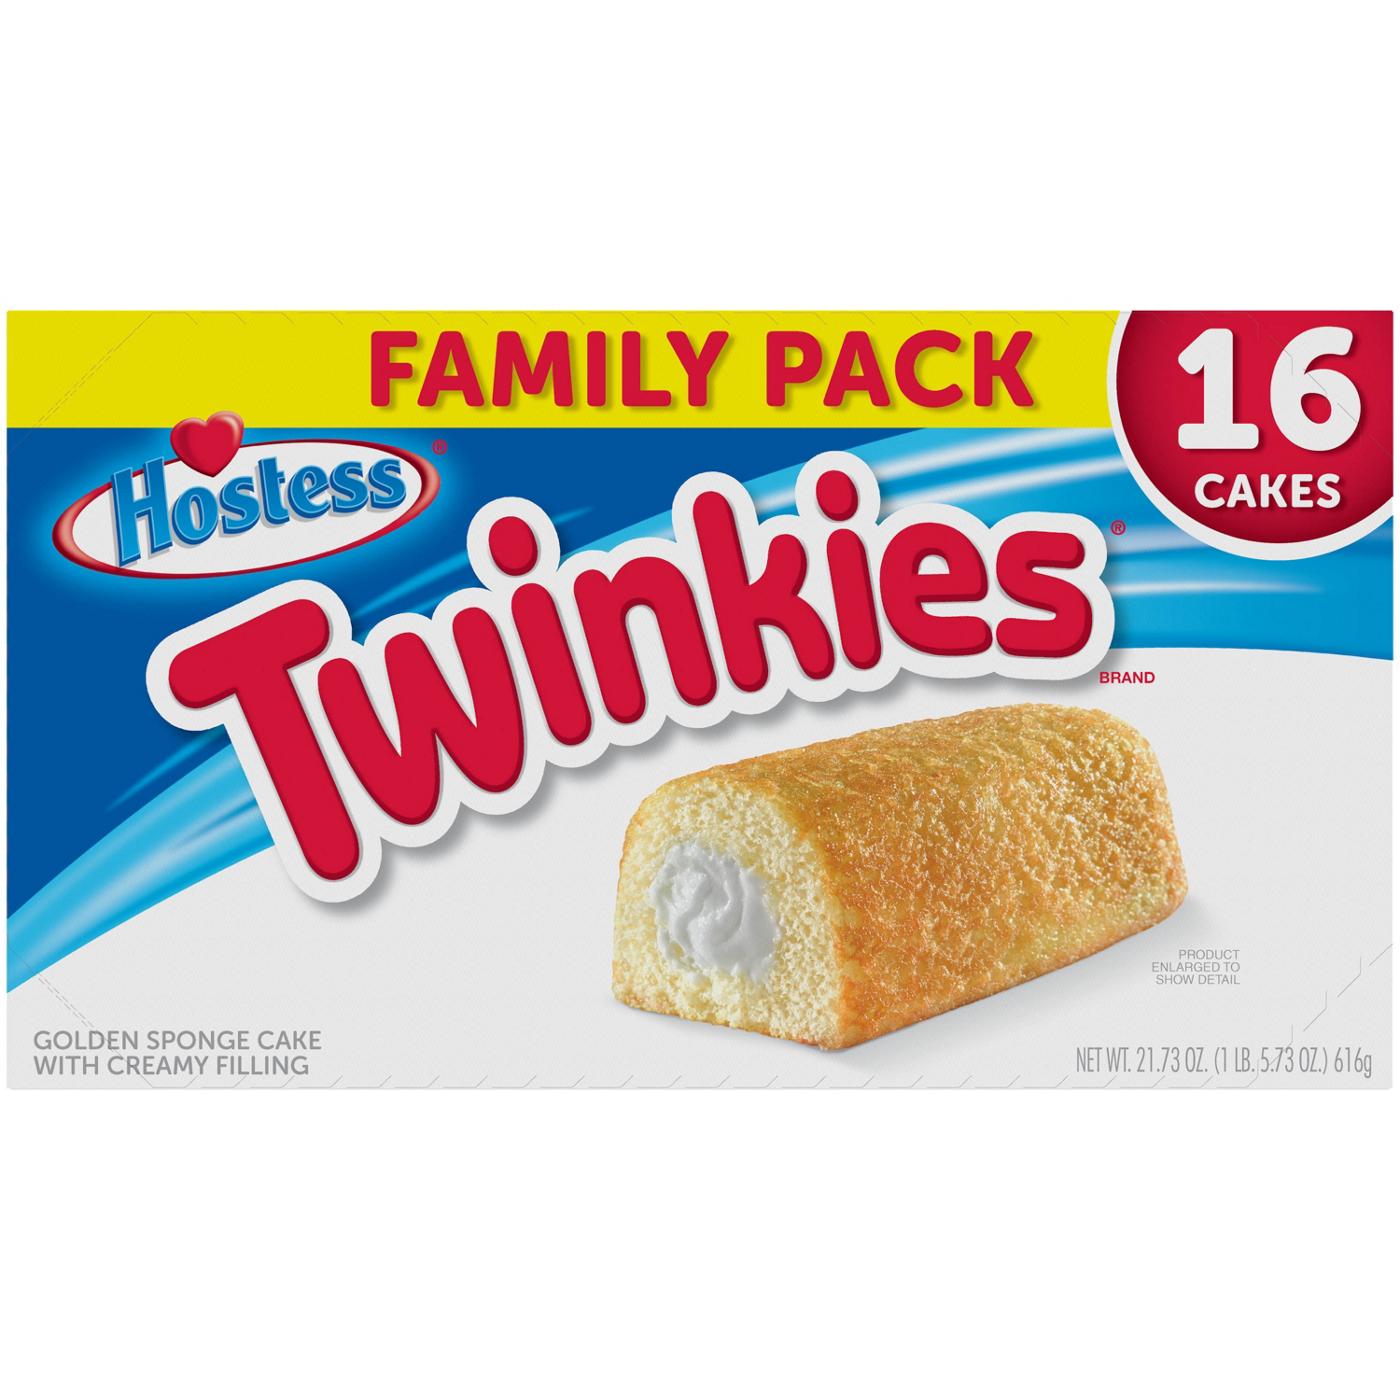 Hostess Twinkies Golden Sponge Cake - Family Pack; image 1 of 4